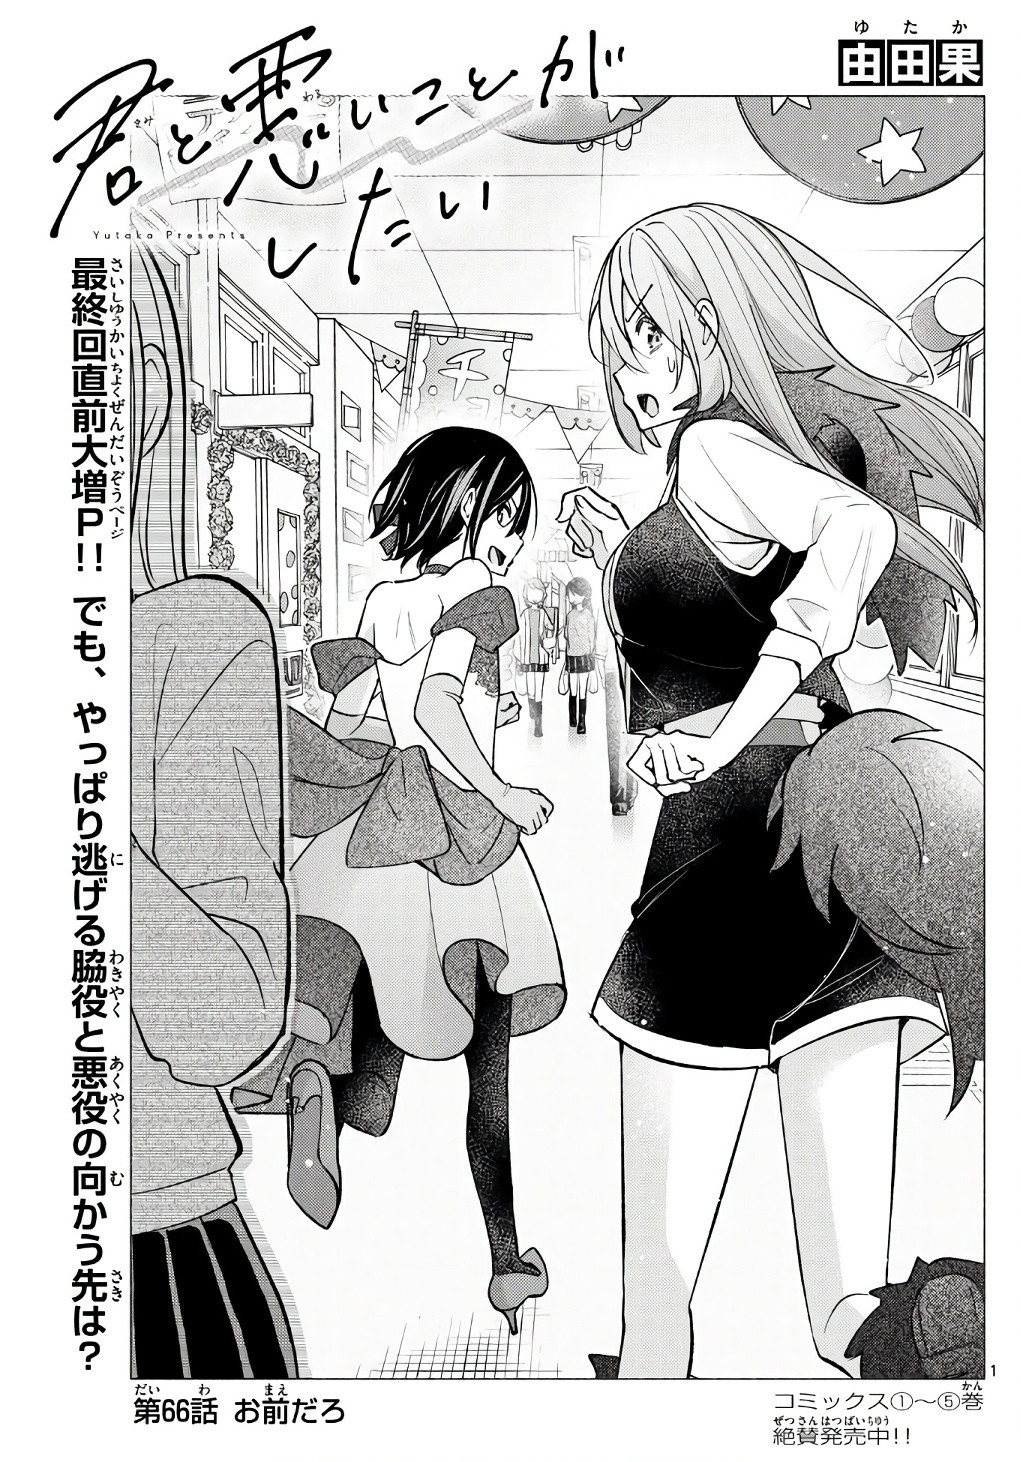 Kimi to Warui Koto ga Shitai - Chapter 066 - Page 1